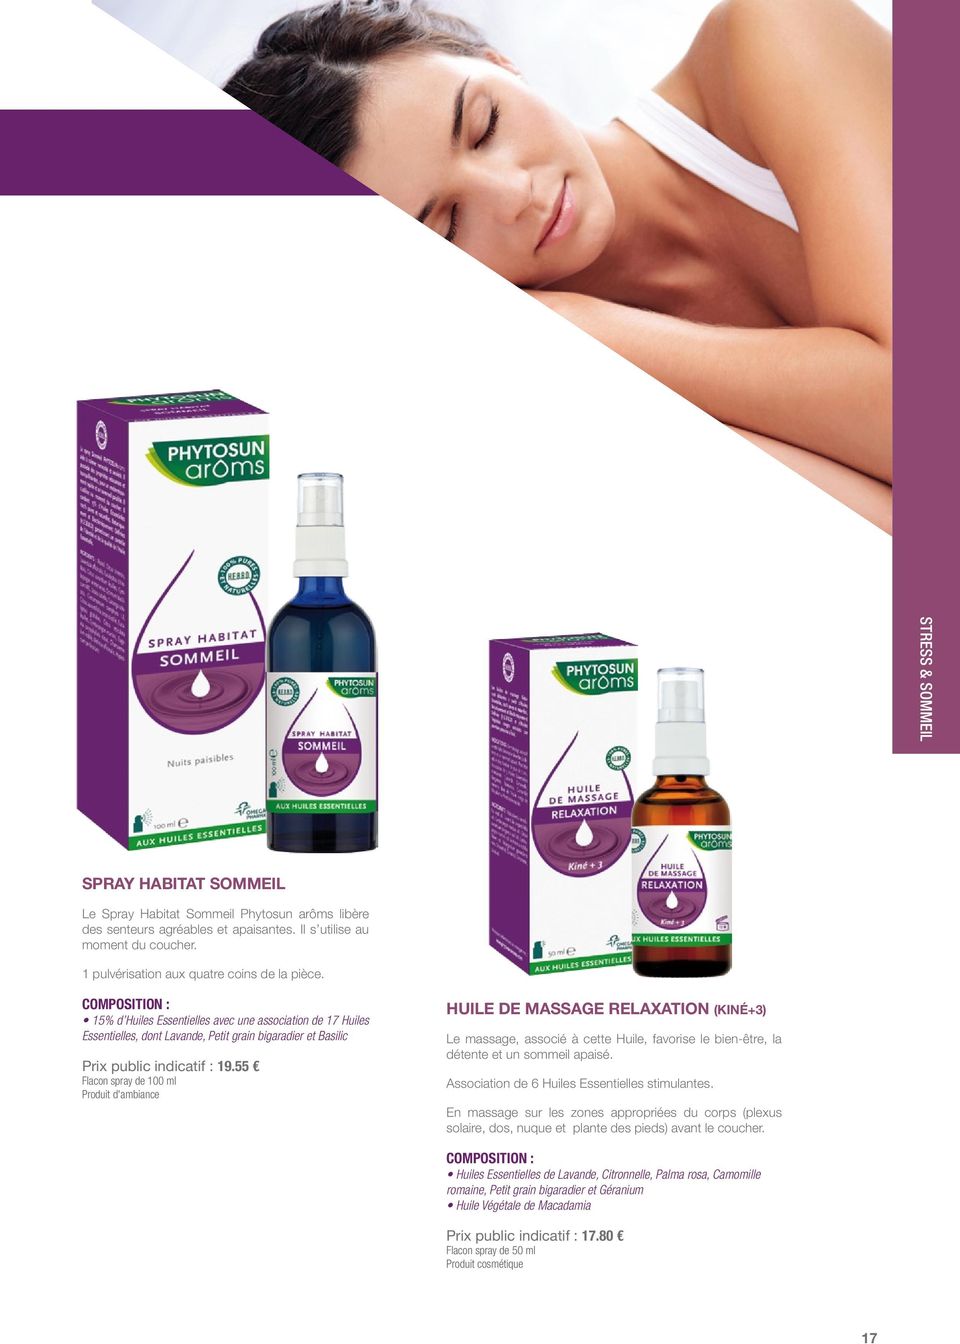 55 Flacon spray de 100 ml Produit d'ambiance HUILE DE MASSAGE RELAXATION (KINÉ+3) Le massage, associé à cette Huile, favorise le bien-être, la détente et un sommeil apaisé.